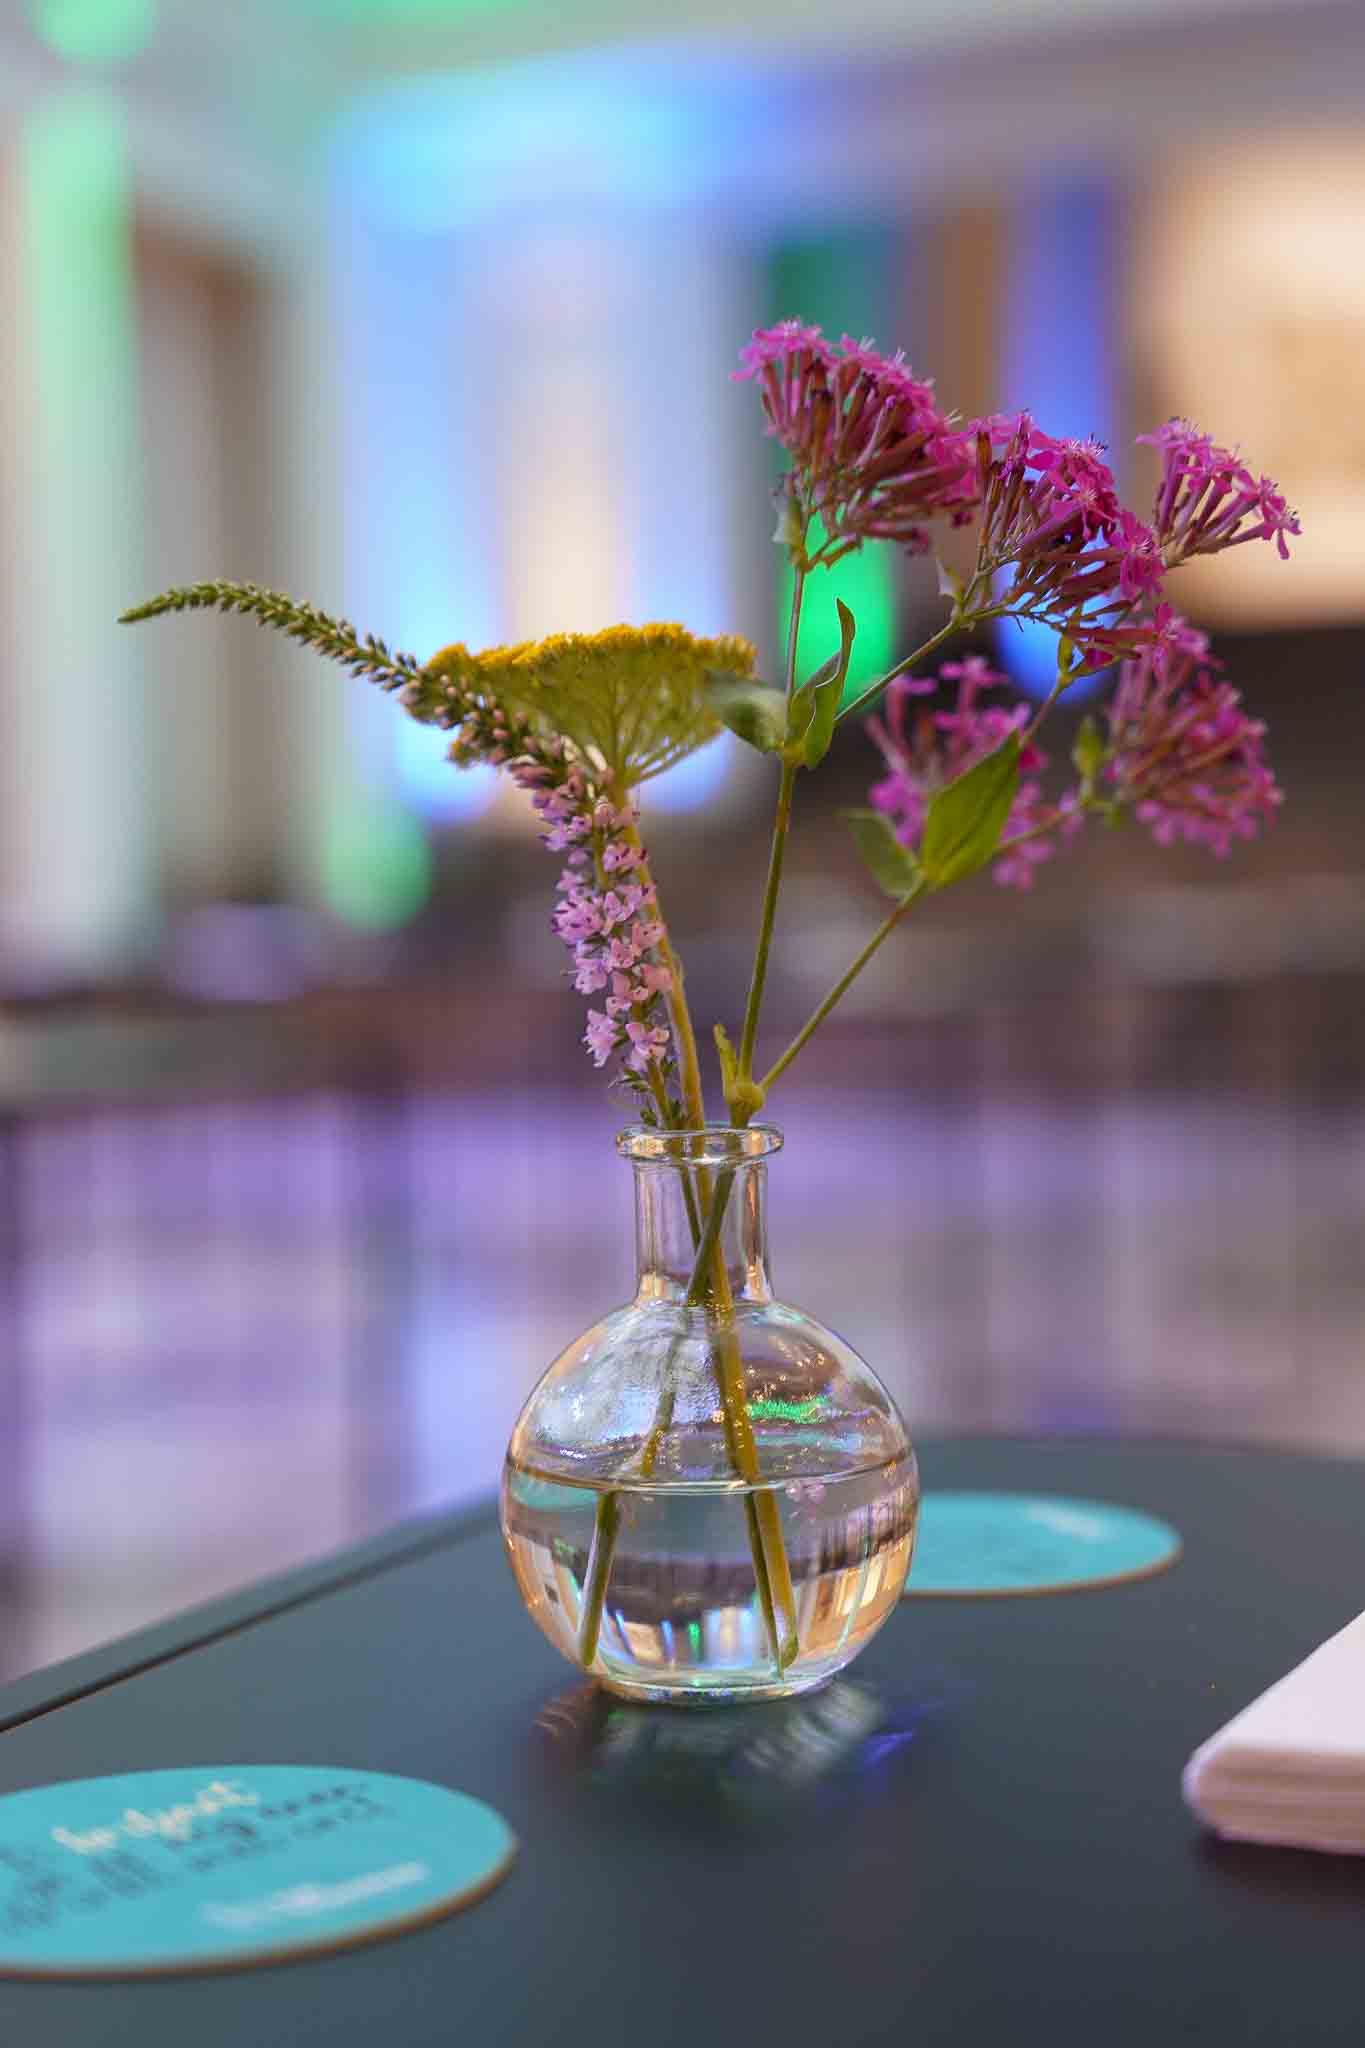 Kleine glazen vaas met bloemen als decoratie.